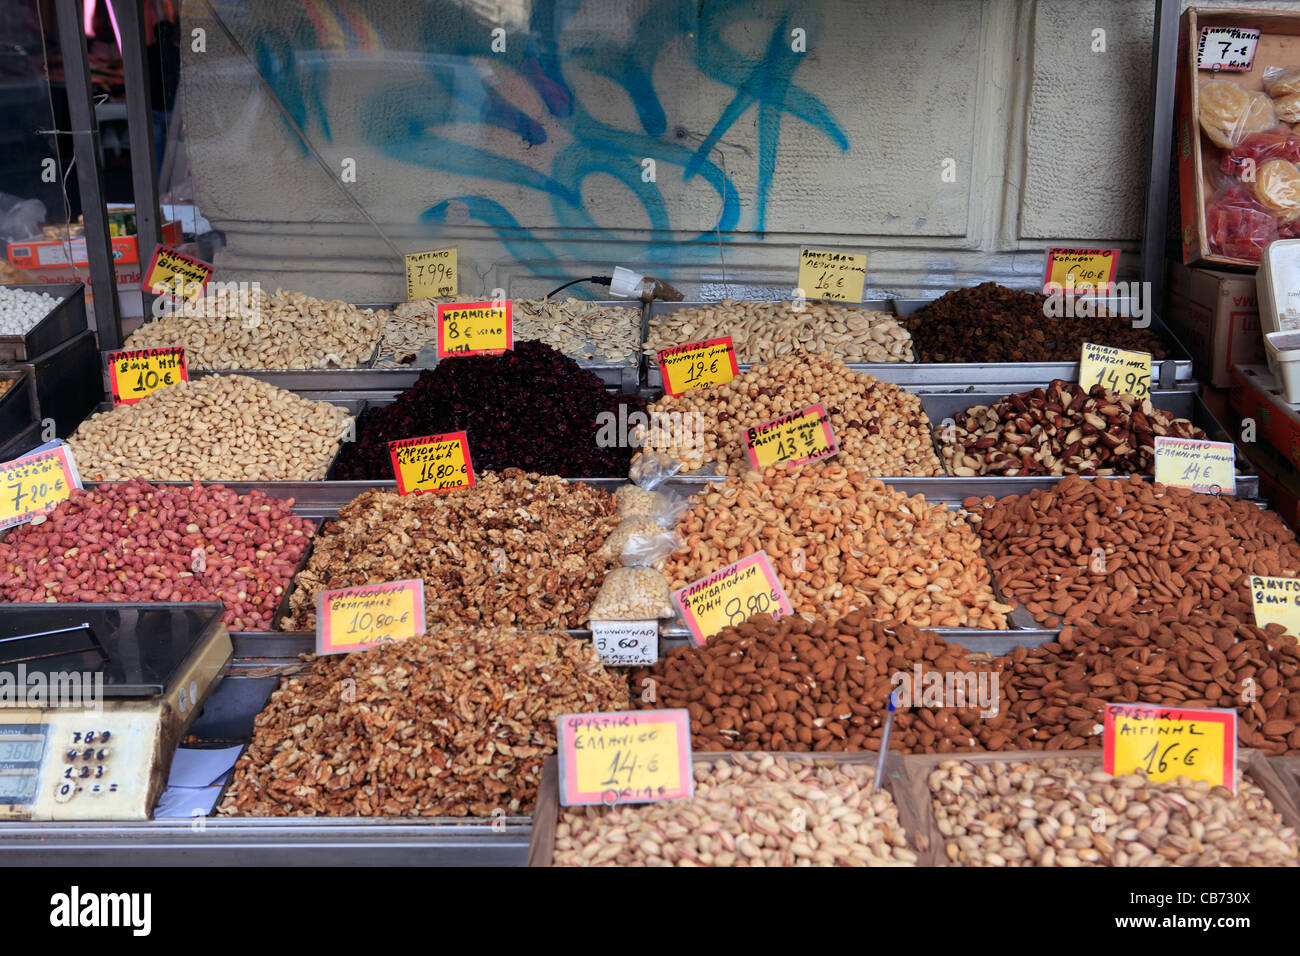 Grèce Athènes Plaka un magasin de vente de divers types de noix Banque D'Images